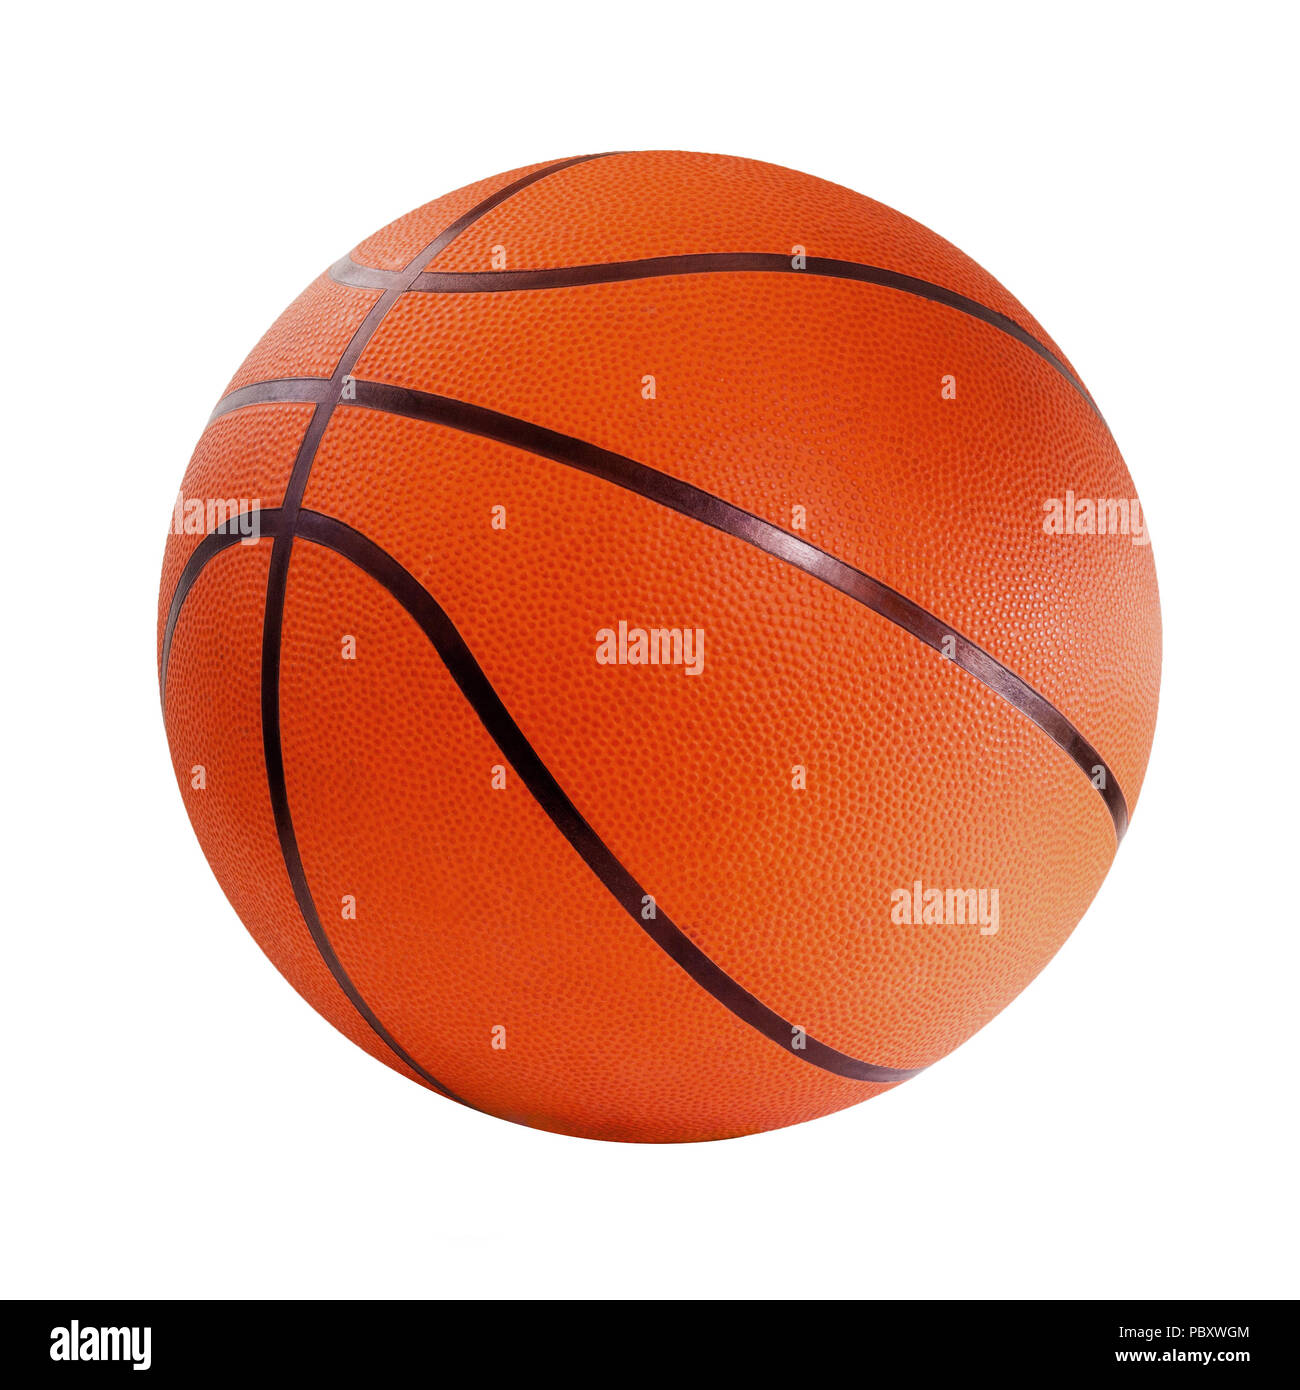 Orange basket ball, isolated in white background Stock Photo